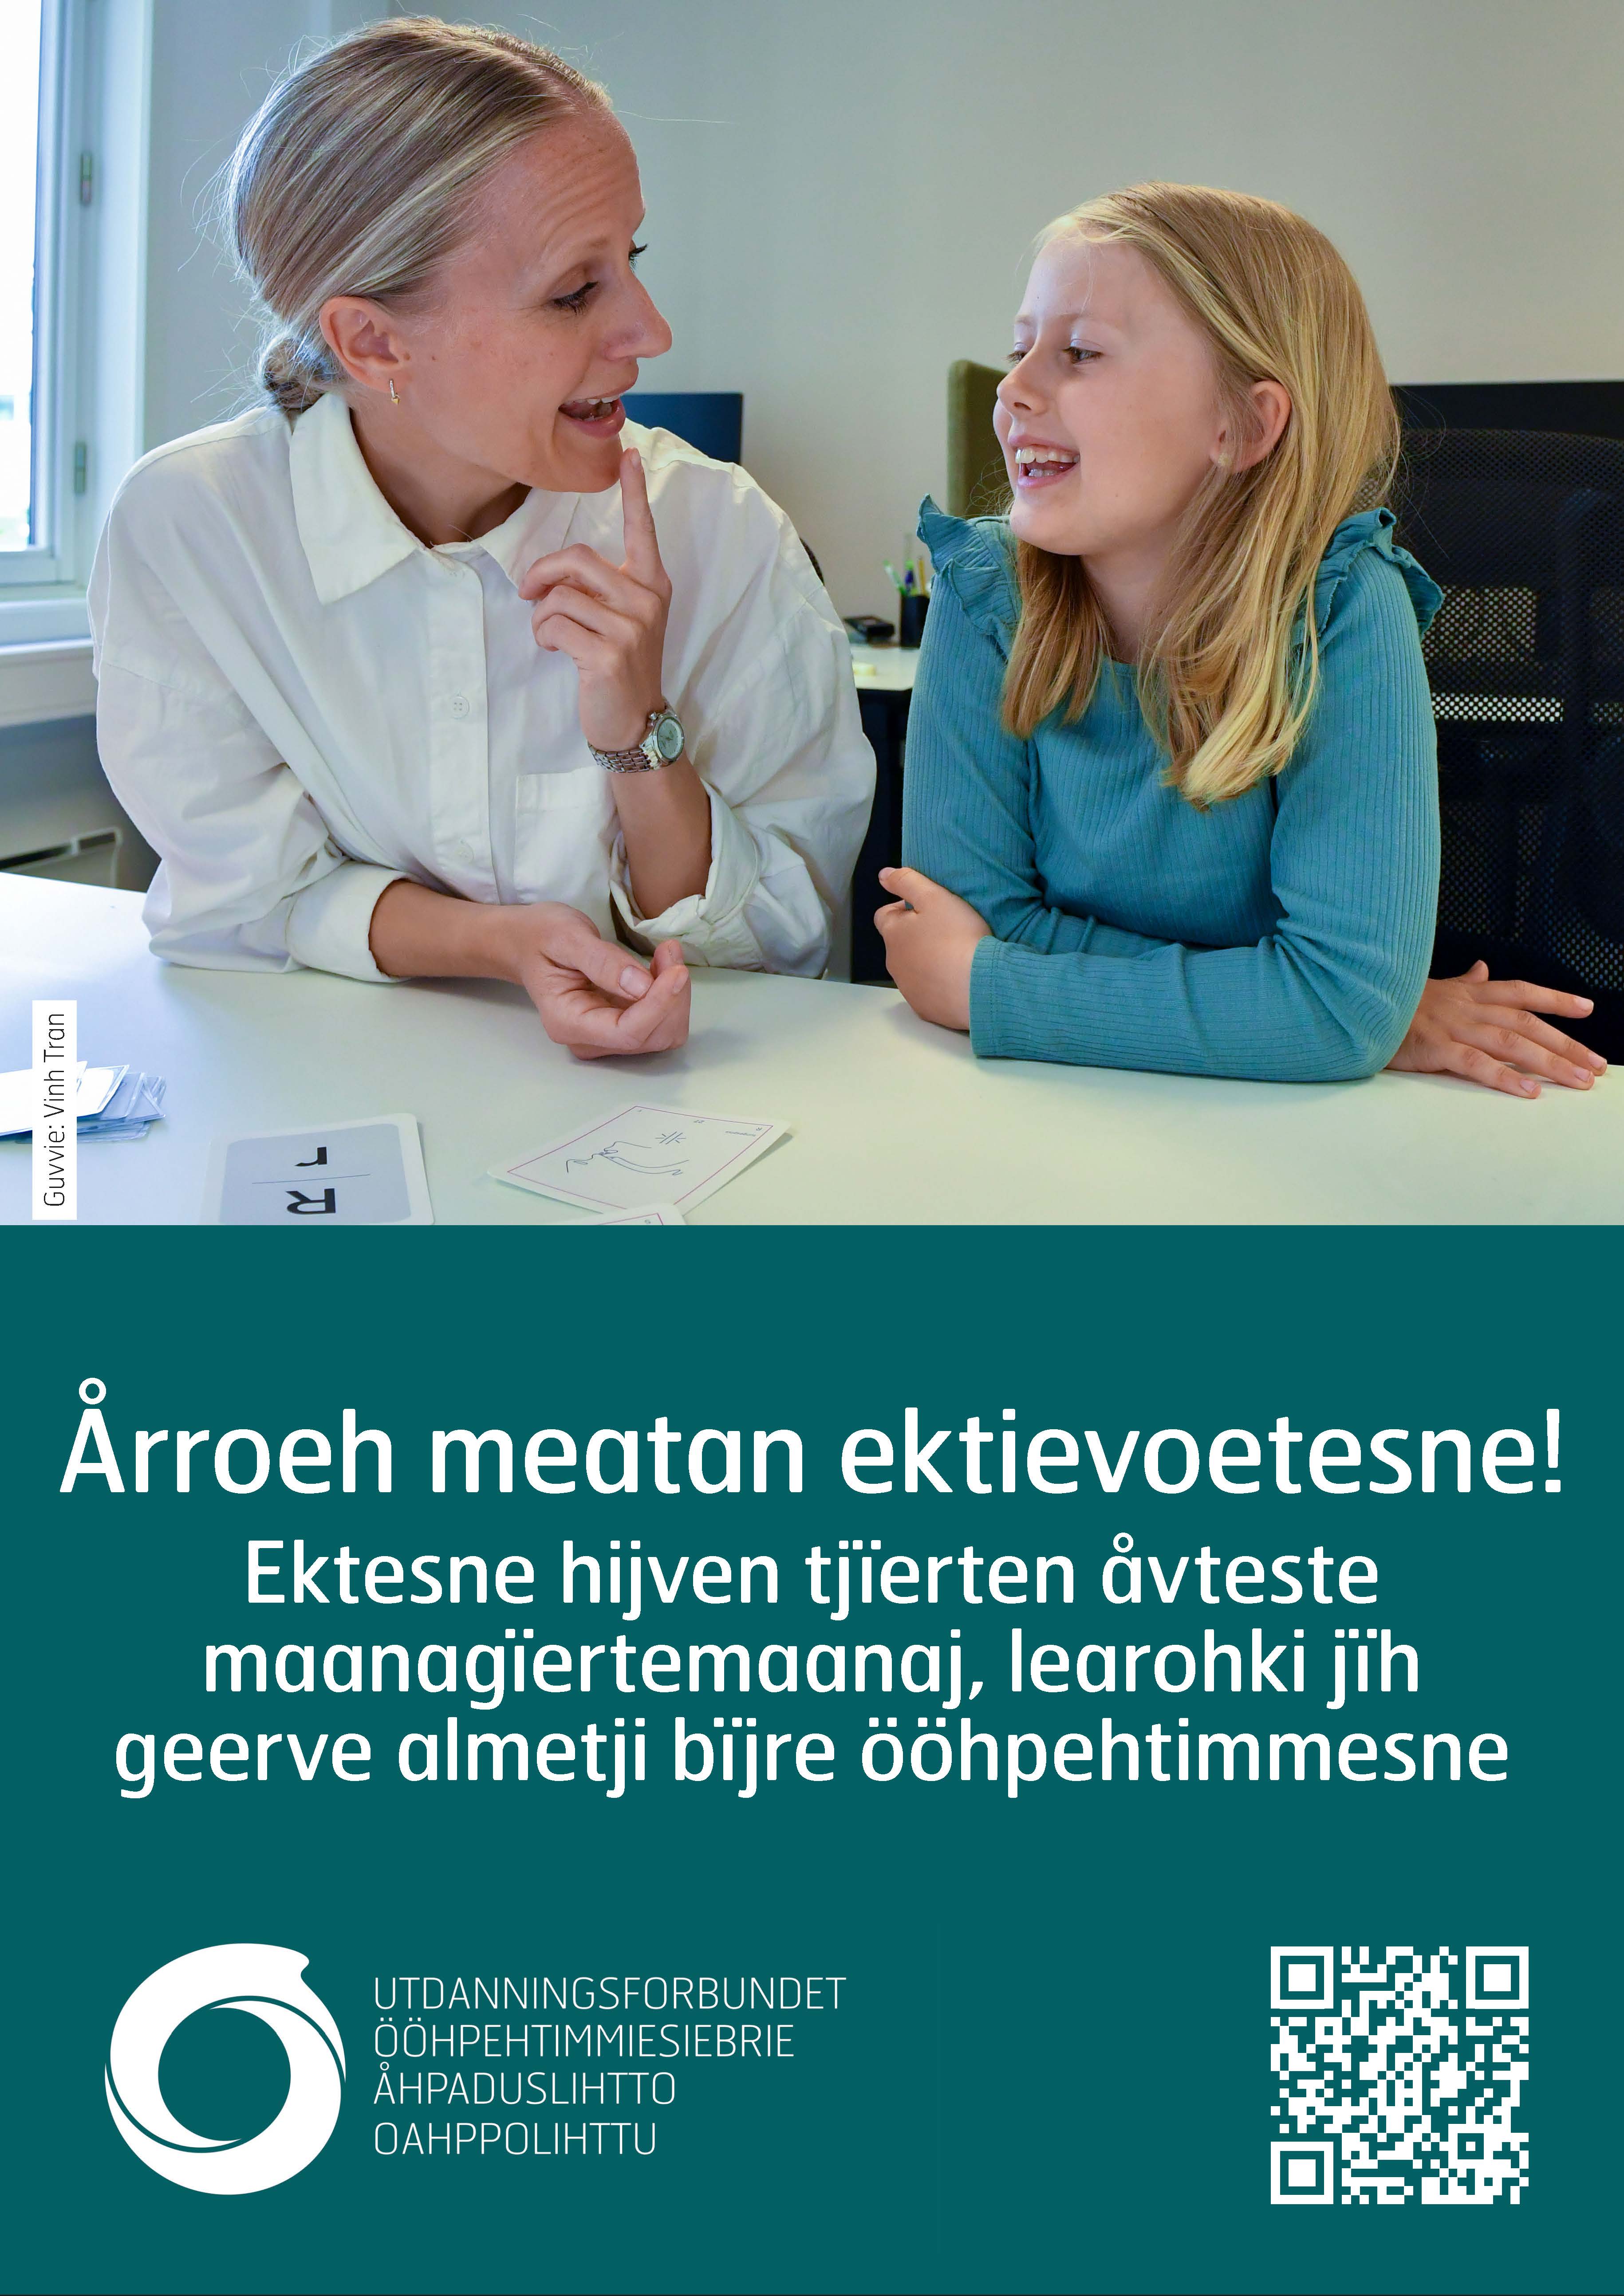 Plakat A3 Bli med i fellesskapet. Faglig og administrativt støttesystem. Sør-samisk.jpg